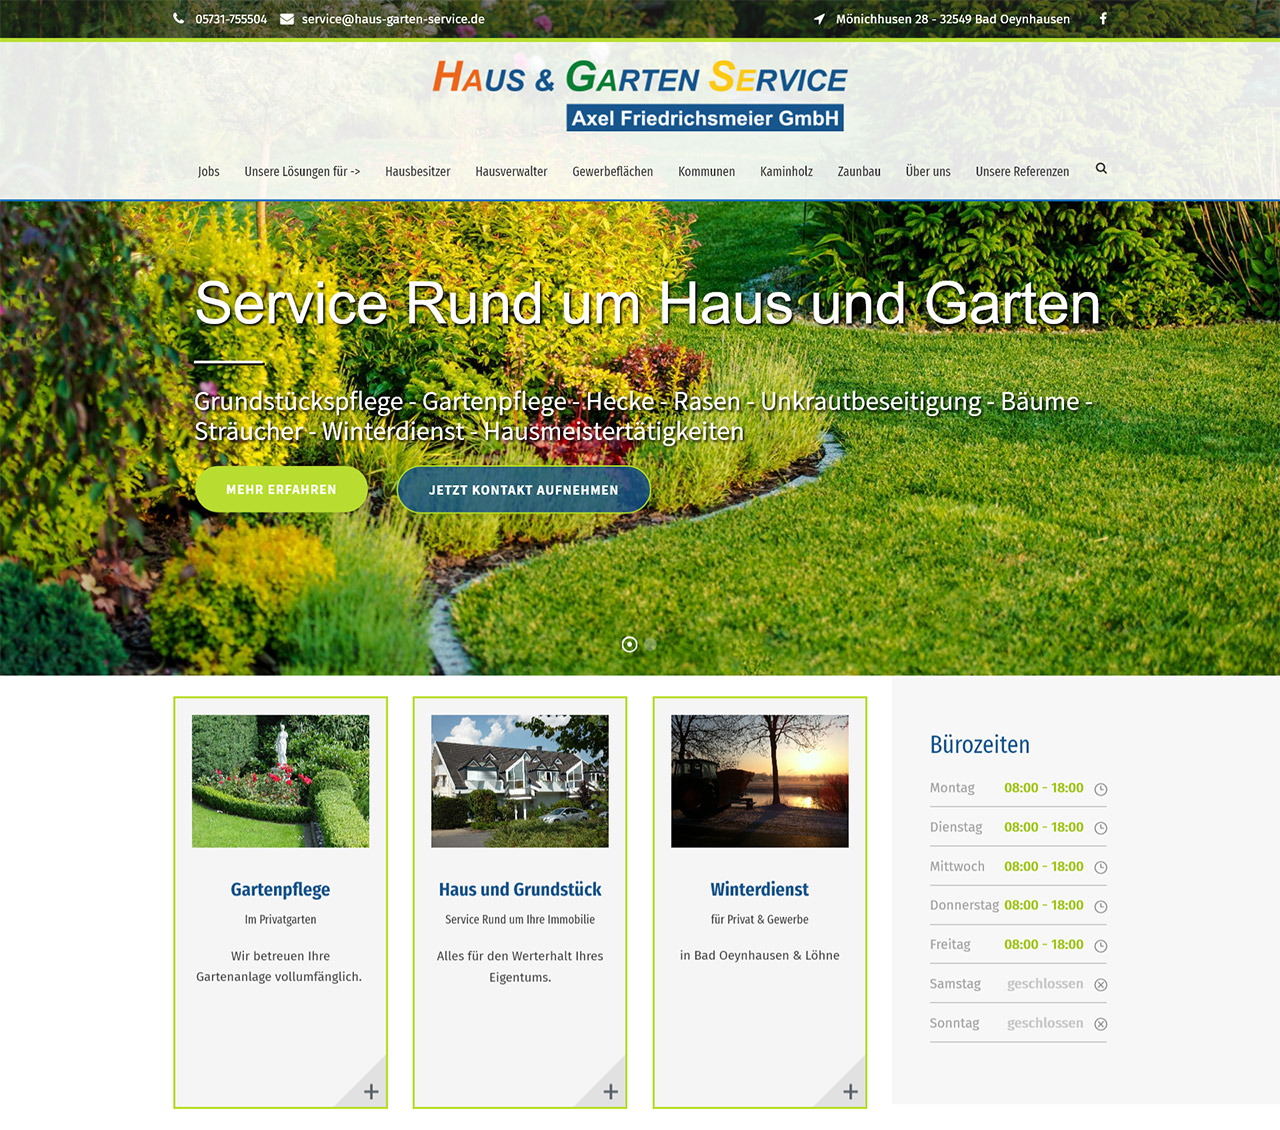 Haus & Garten Service - Axel Friedrichsmeier GmbH